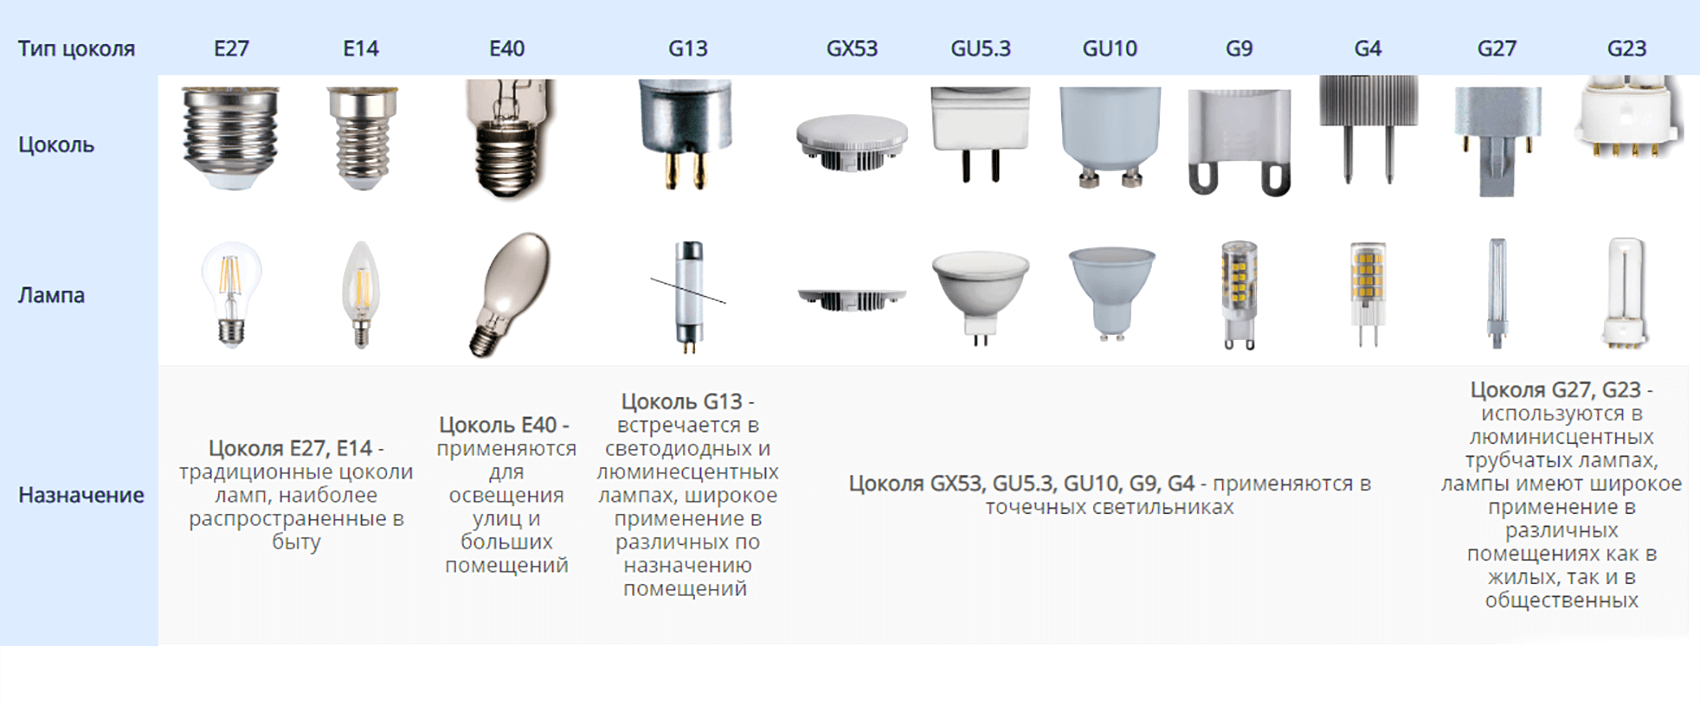 Gx53 светильник для натяжных потолков и что нужно о нем знать